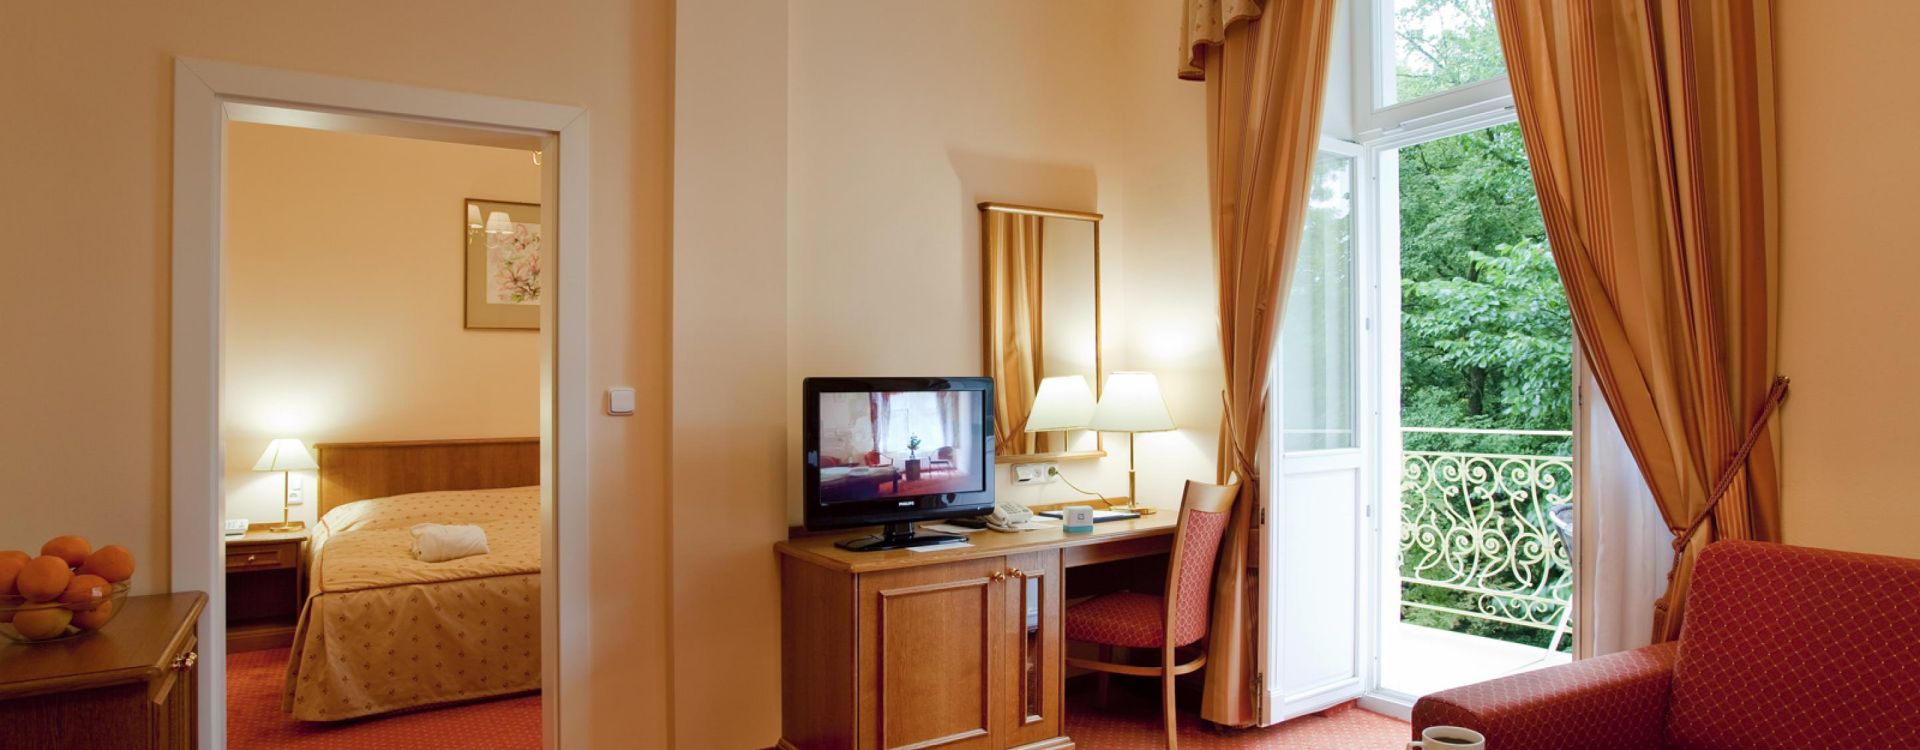 Hotel Vltava - Ubytování se snídaní